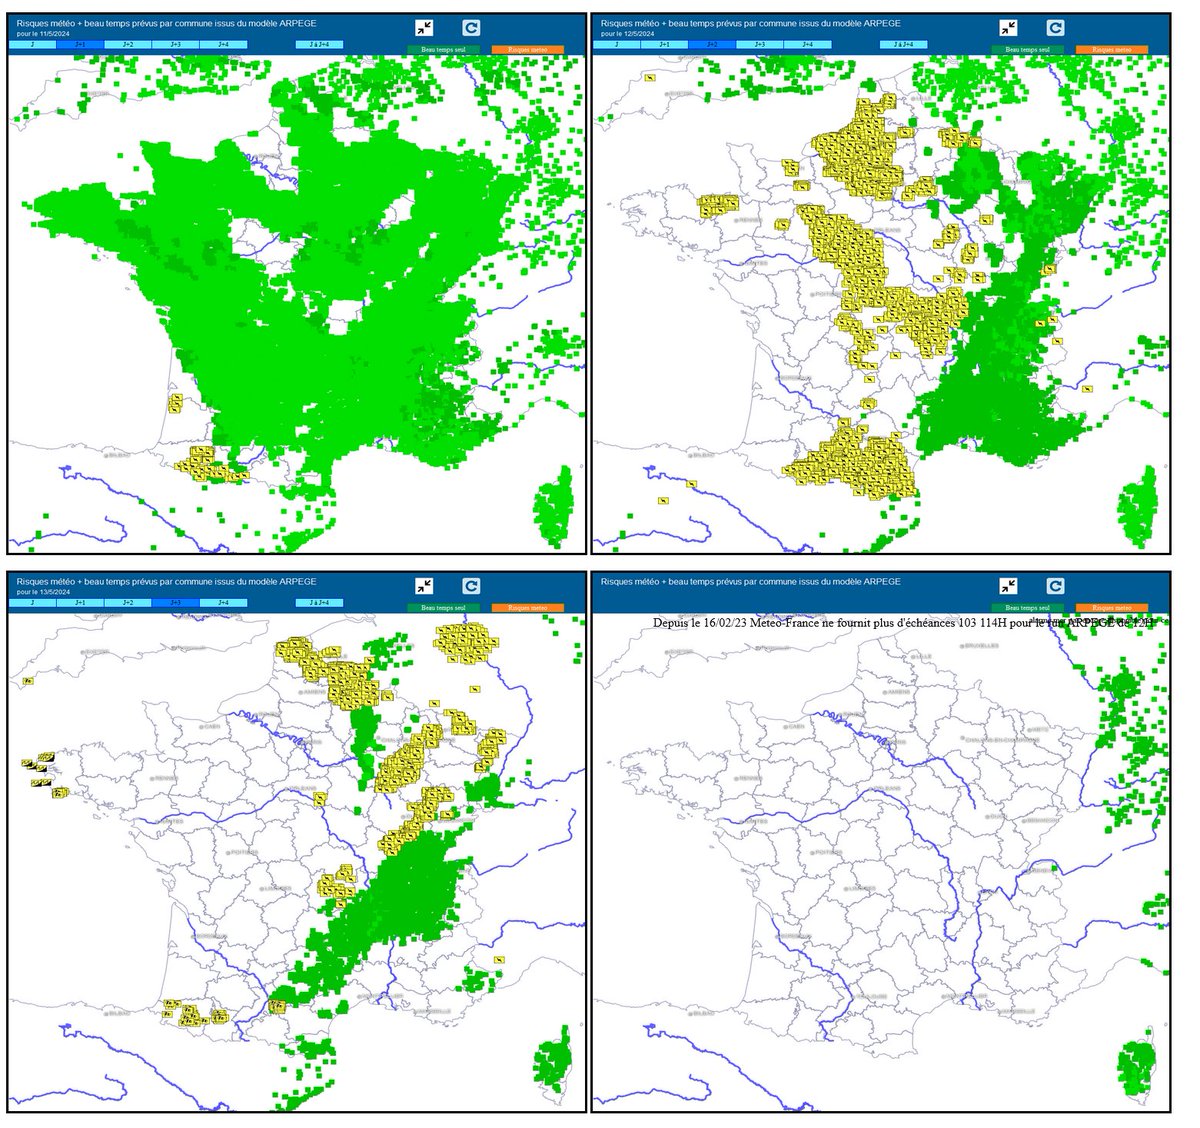 Prévisions risques  &  beau temps (vert) #meteolab, par commune par le modèle ARPEGE de samedi à mardi.
#orages du samedi soir & dimanche AP
meteolab.fr/modele/carte_m…